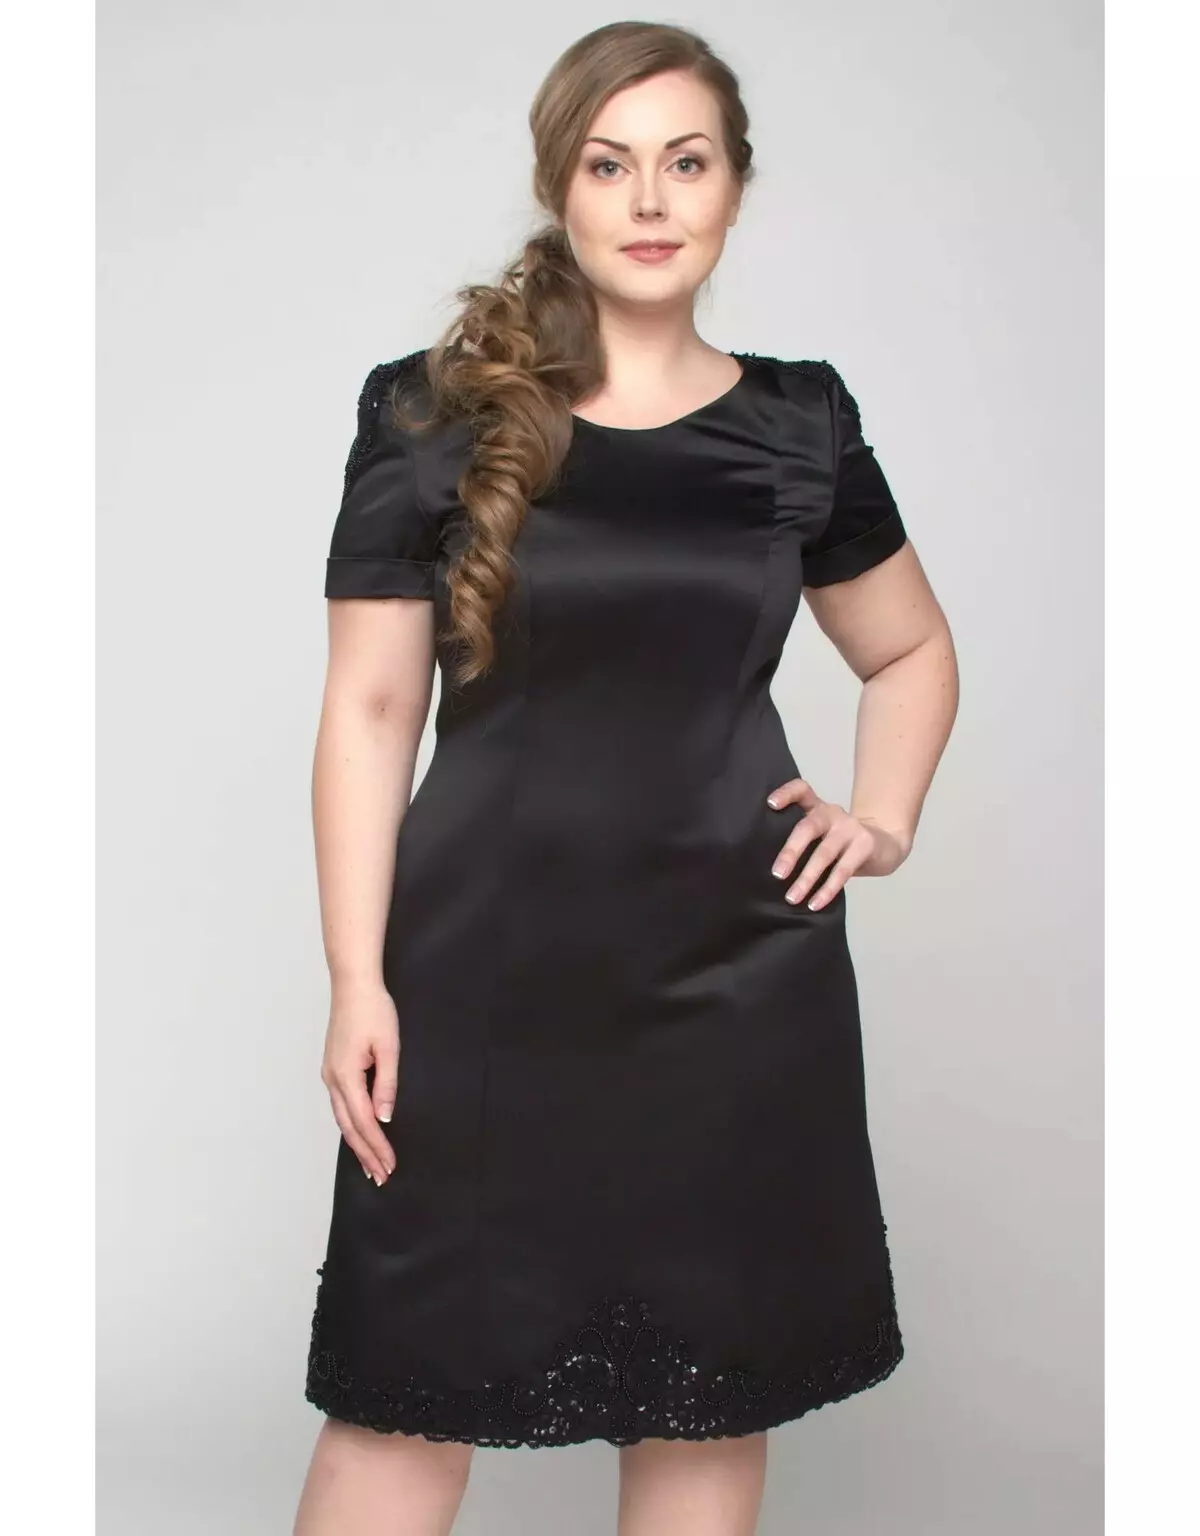 Мерліс (43 фото): жіночий одяг, відгуки про сукнях і топах з колекцій бренду 3876_22